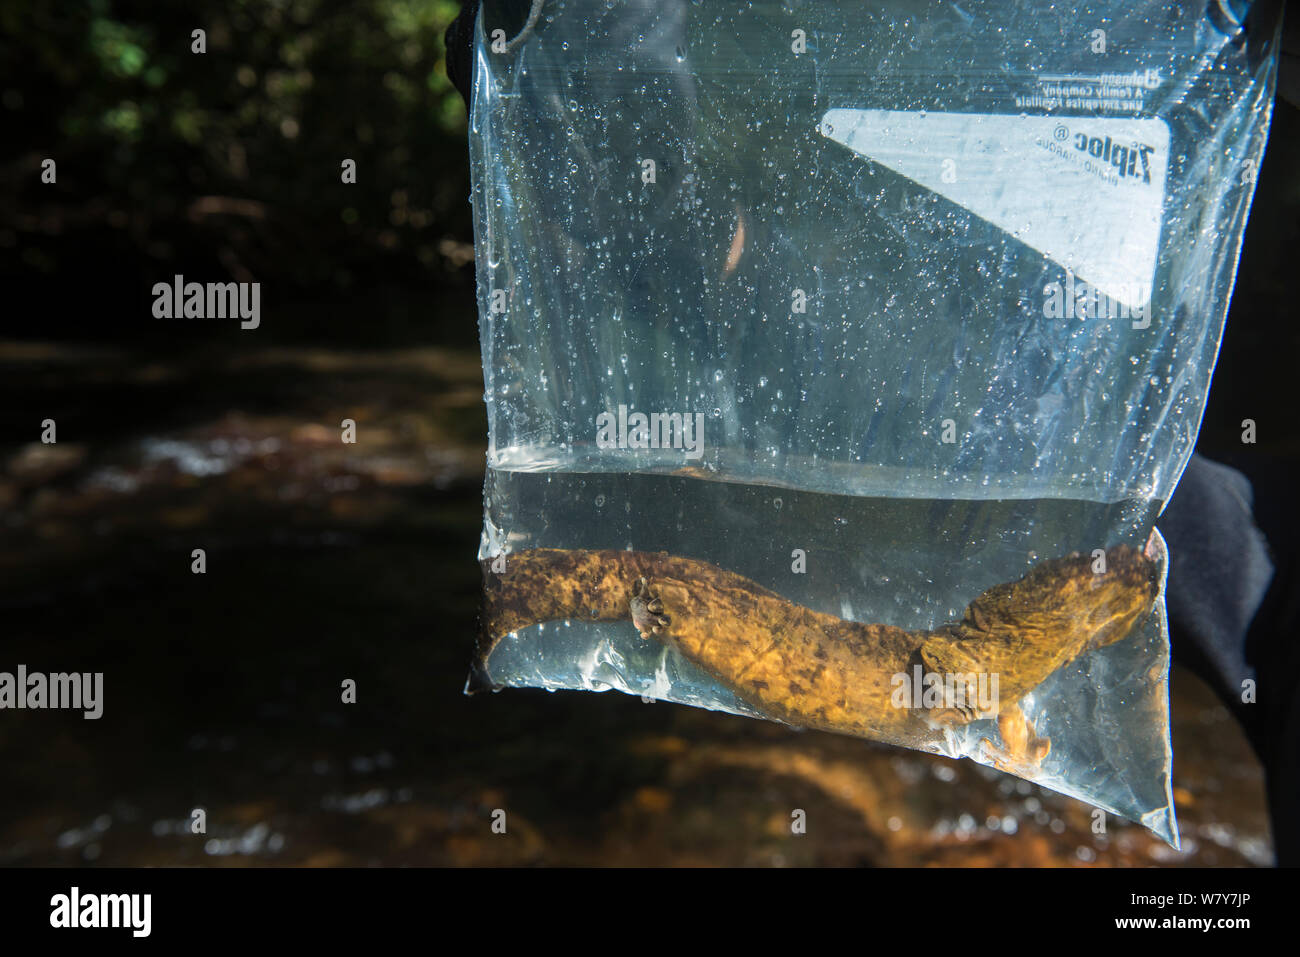 Hellbender oriental (Cryptobranchus alleganiensis alleganiensis) en una bolsa de plástico, capturados para la investigación. Coopers Creek, Bosque Nacional Chattahoochee, Georgia, EE.UU. Julio. Foto de stock